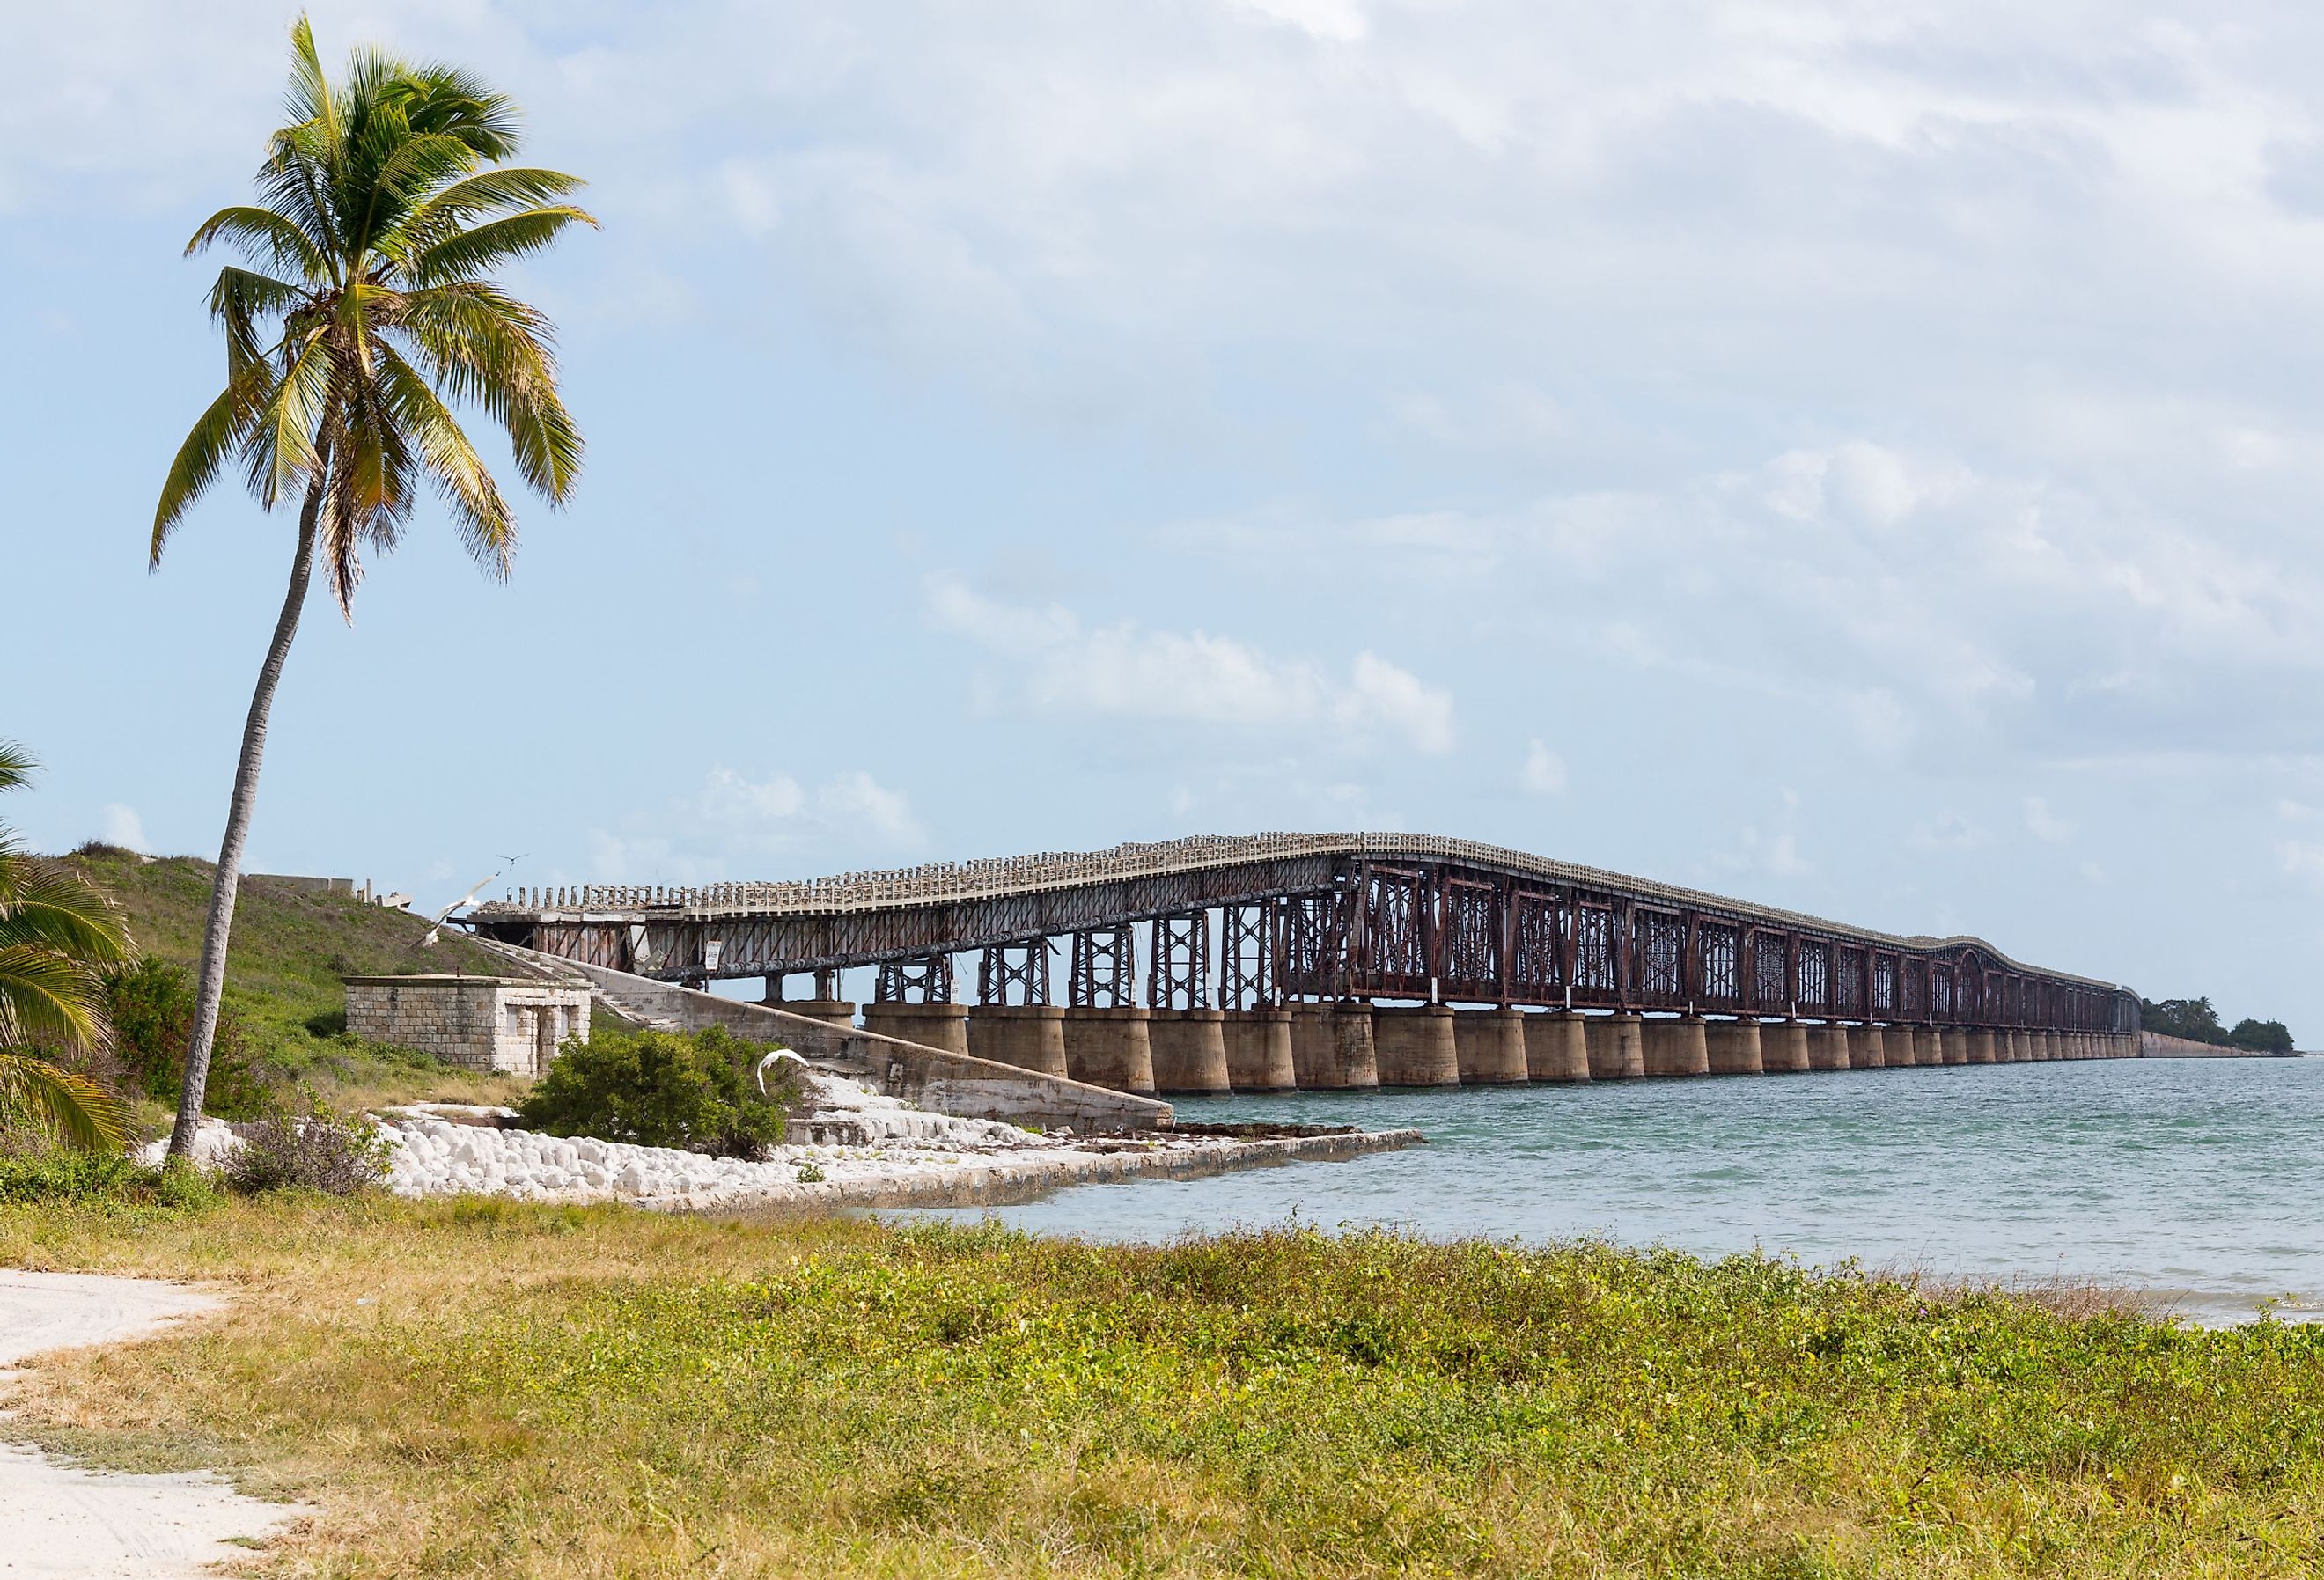 Old Bahia Honda rail bridge and heritage trail in Florida Keys by Route 1 Overseas Highway. Image credit Steve Heap via Shutterstock.